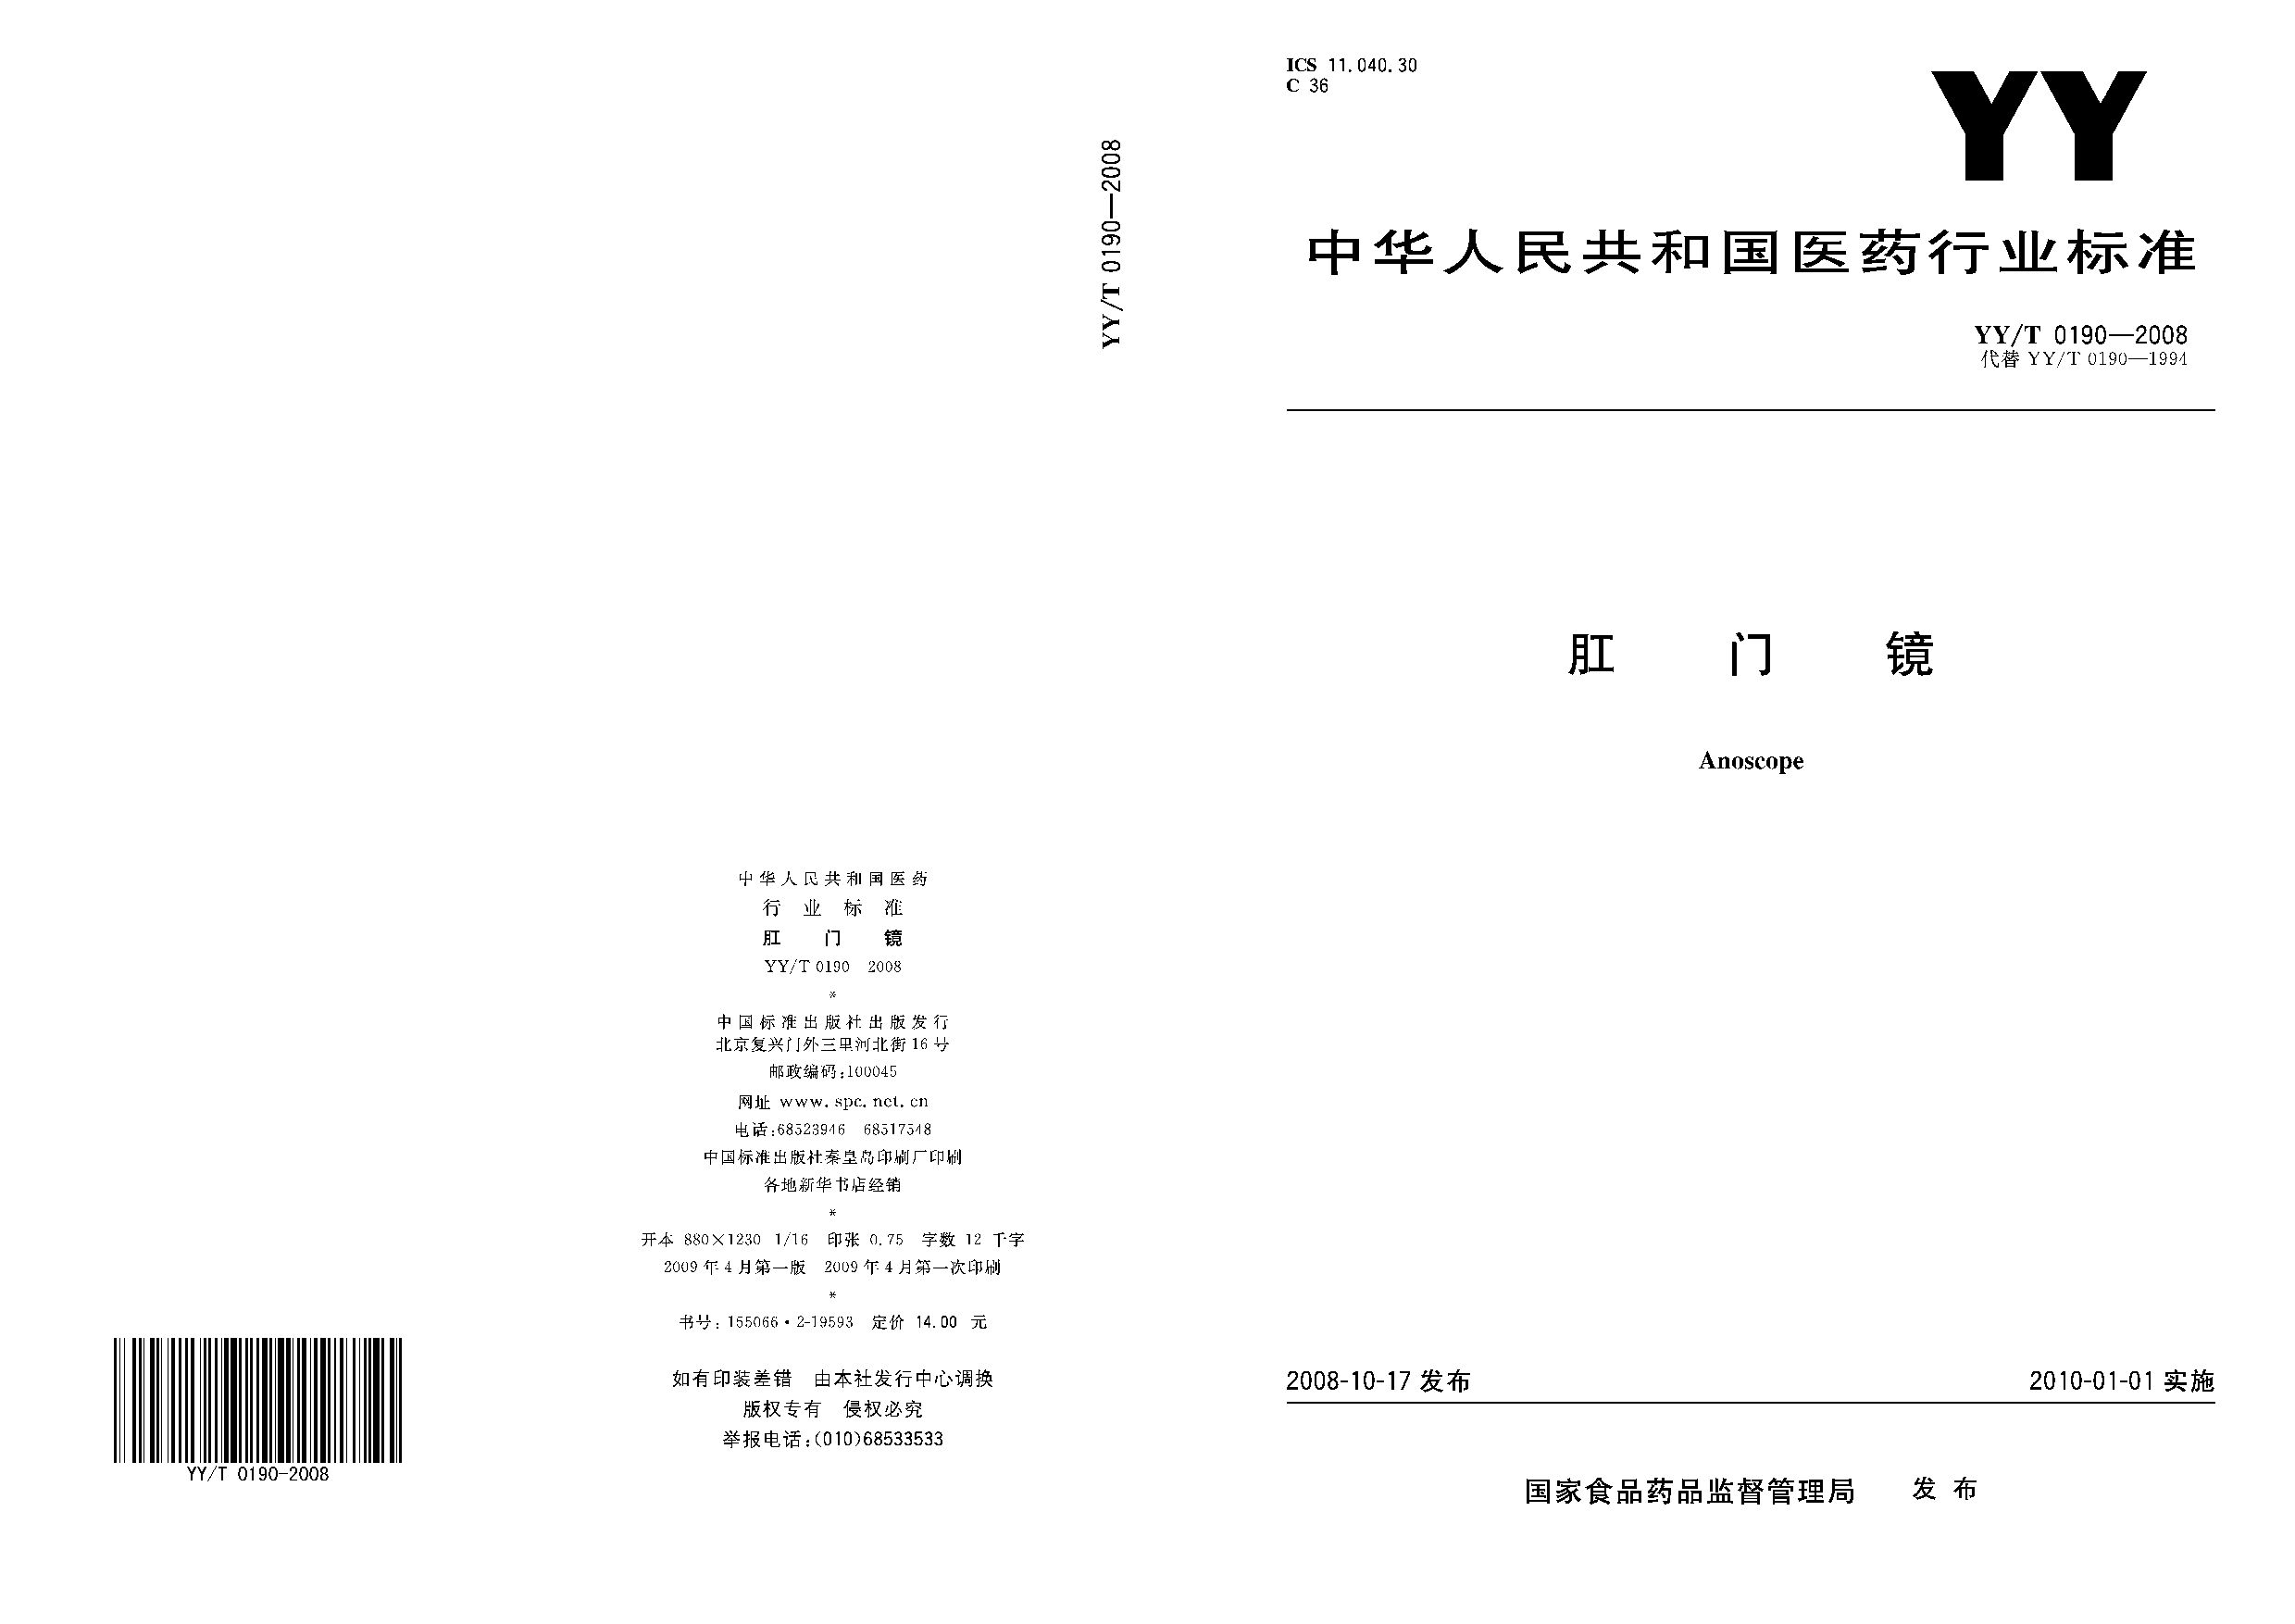 YY/T 0190-2008封面图